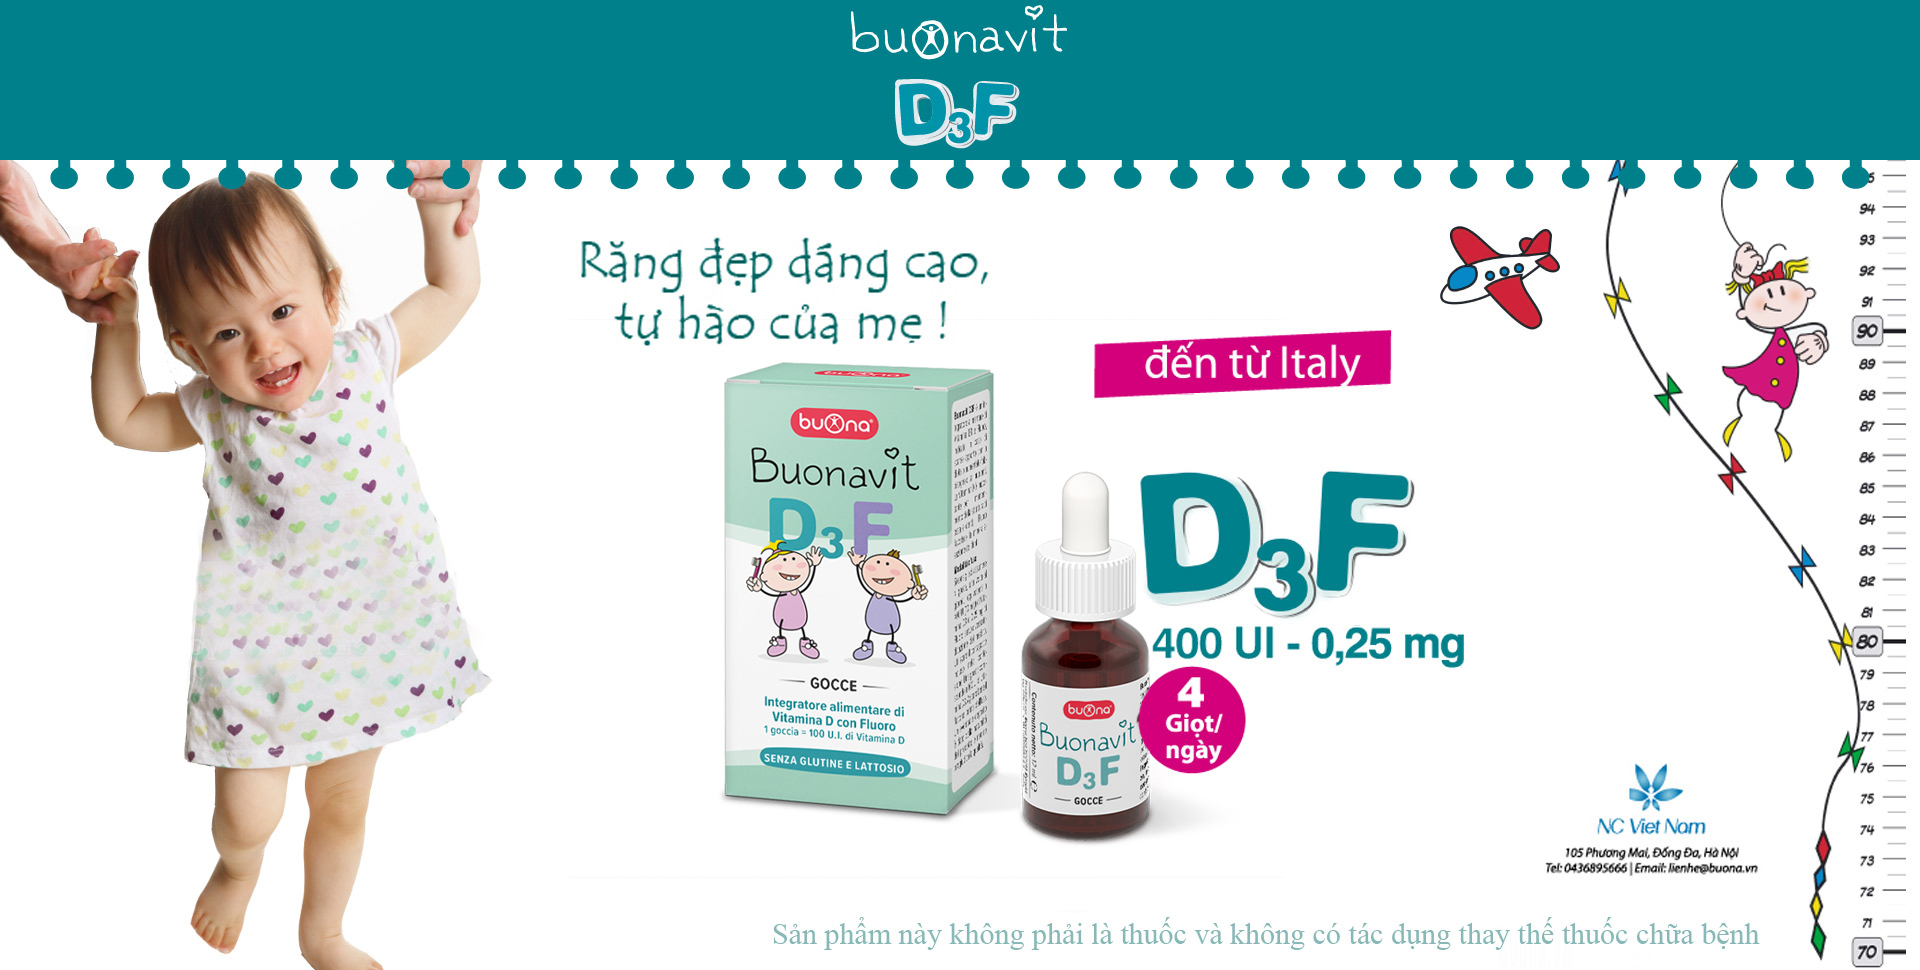 Bổ sung vitamin D3 và Flor Buonavit D3F